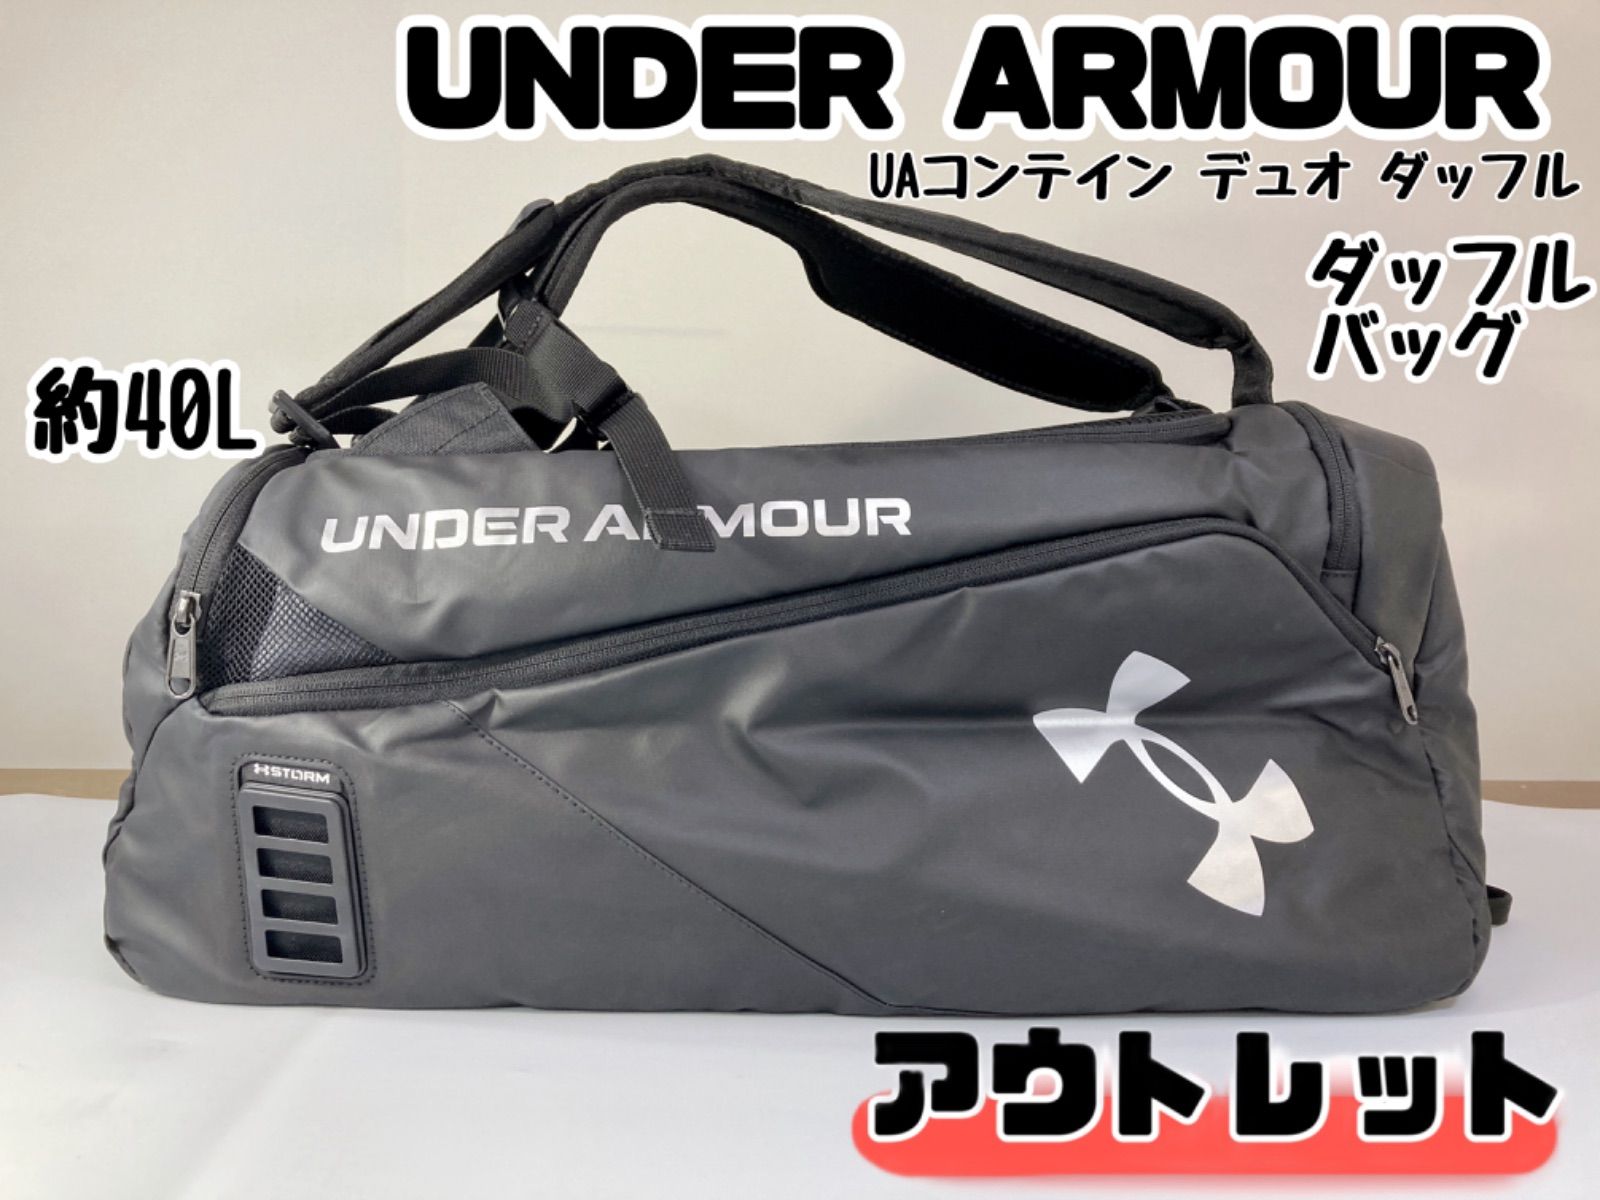 AZ224 UNDER ARMOUR アンダーアーマー UAコンテイン デュオ ダッフル Sサイズ 1361225 001 2022年モデル  日本正規品 ダッフルバッグ バックパック ゴルフ 旅行 スポーツ ブラック メタルシルバー 